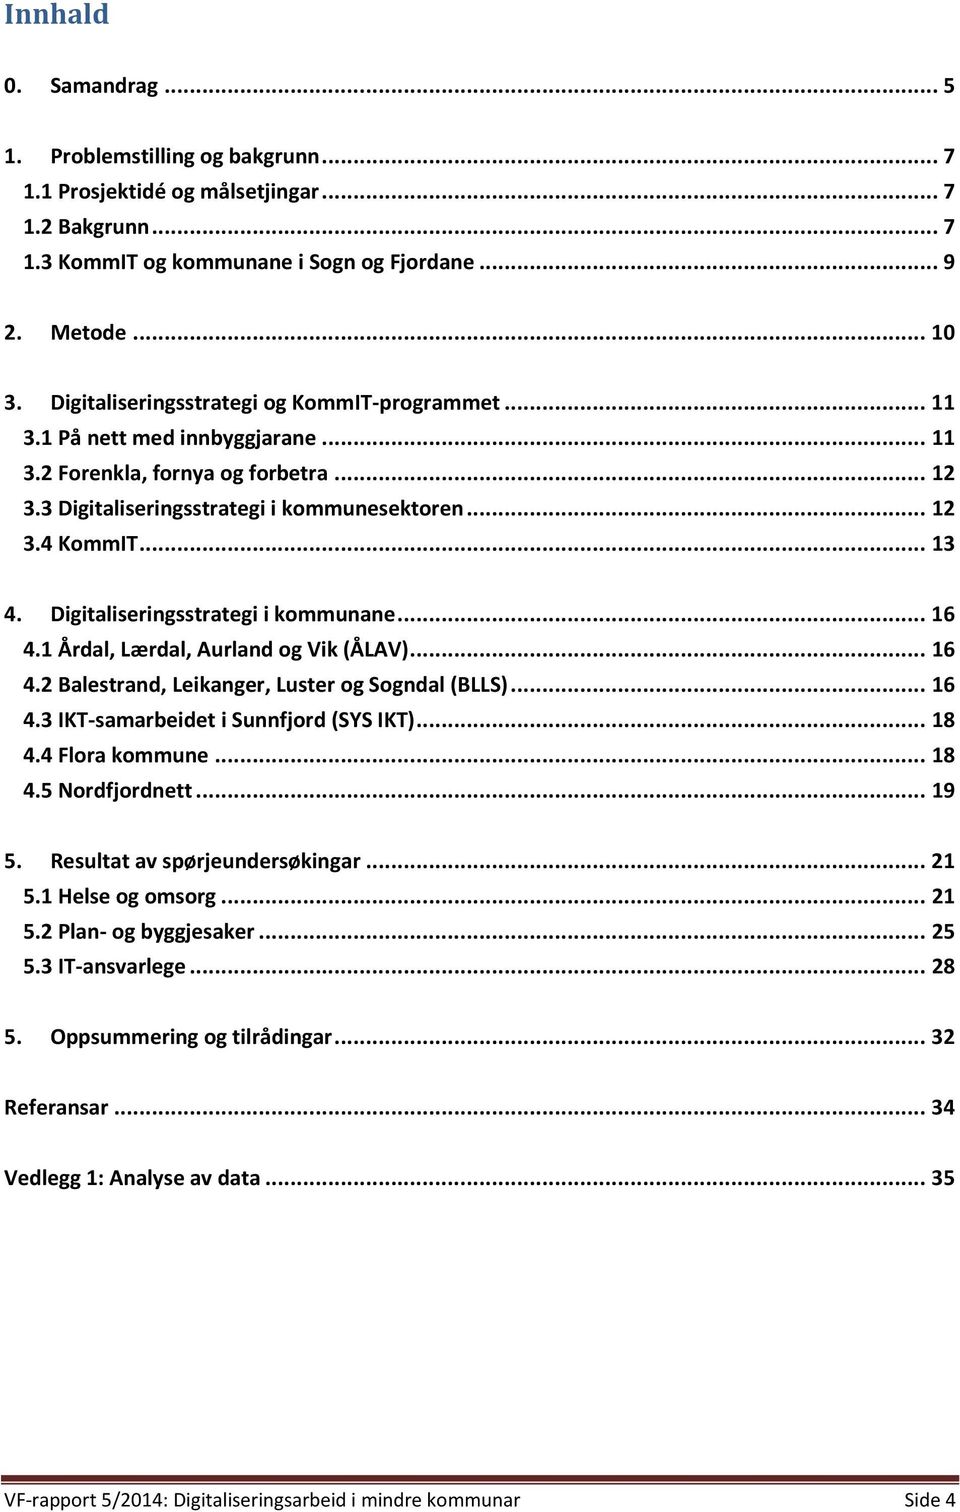 Digitaliseringsstrategi i kommunane... 16 4.1 Årdal, Lærdal, Aurland og Vik (ÅLAV)... 16 4.2 Balestrand, Leikanger, Luster og Sogndal (BLLS)... 16 4.3 IKT-samarbeidet i Sunnfjord (SYS IKT)... 18 4.